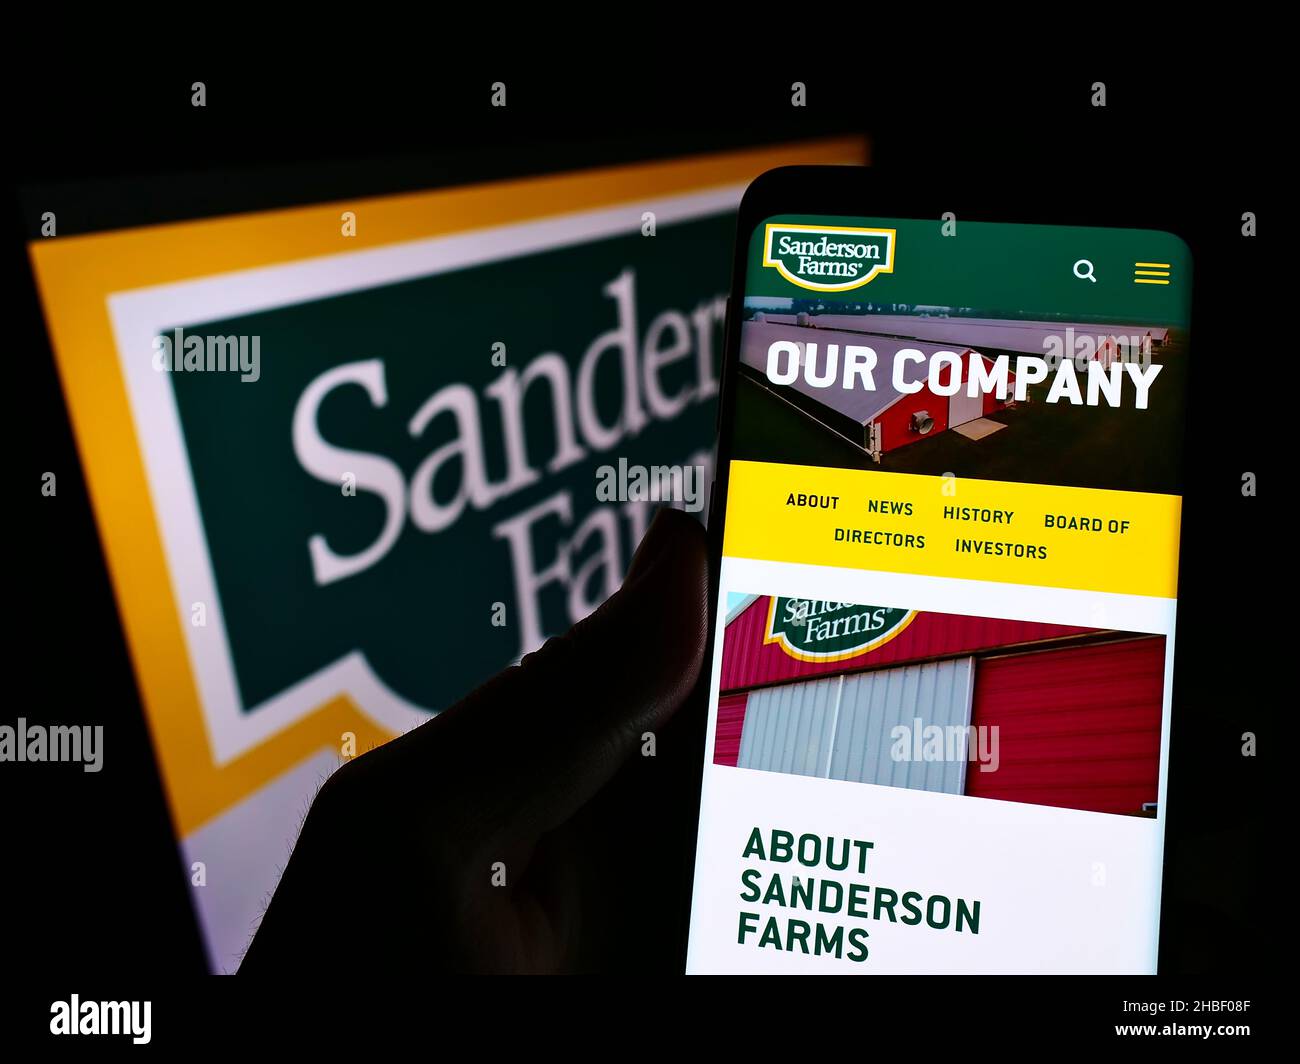 Persona que sostiene el celular con la página web de la compañía de aves de corral de EE.UU. Sanderson Farms Inc. En la pantalla delante del logotipo. Enfoque en el centro de la pantalla del teléfono. Foto de stock